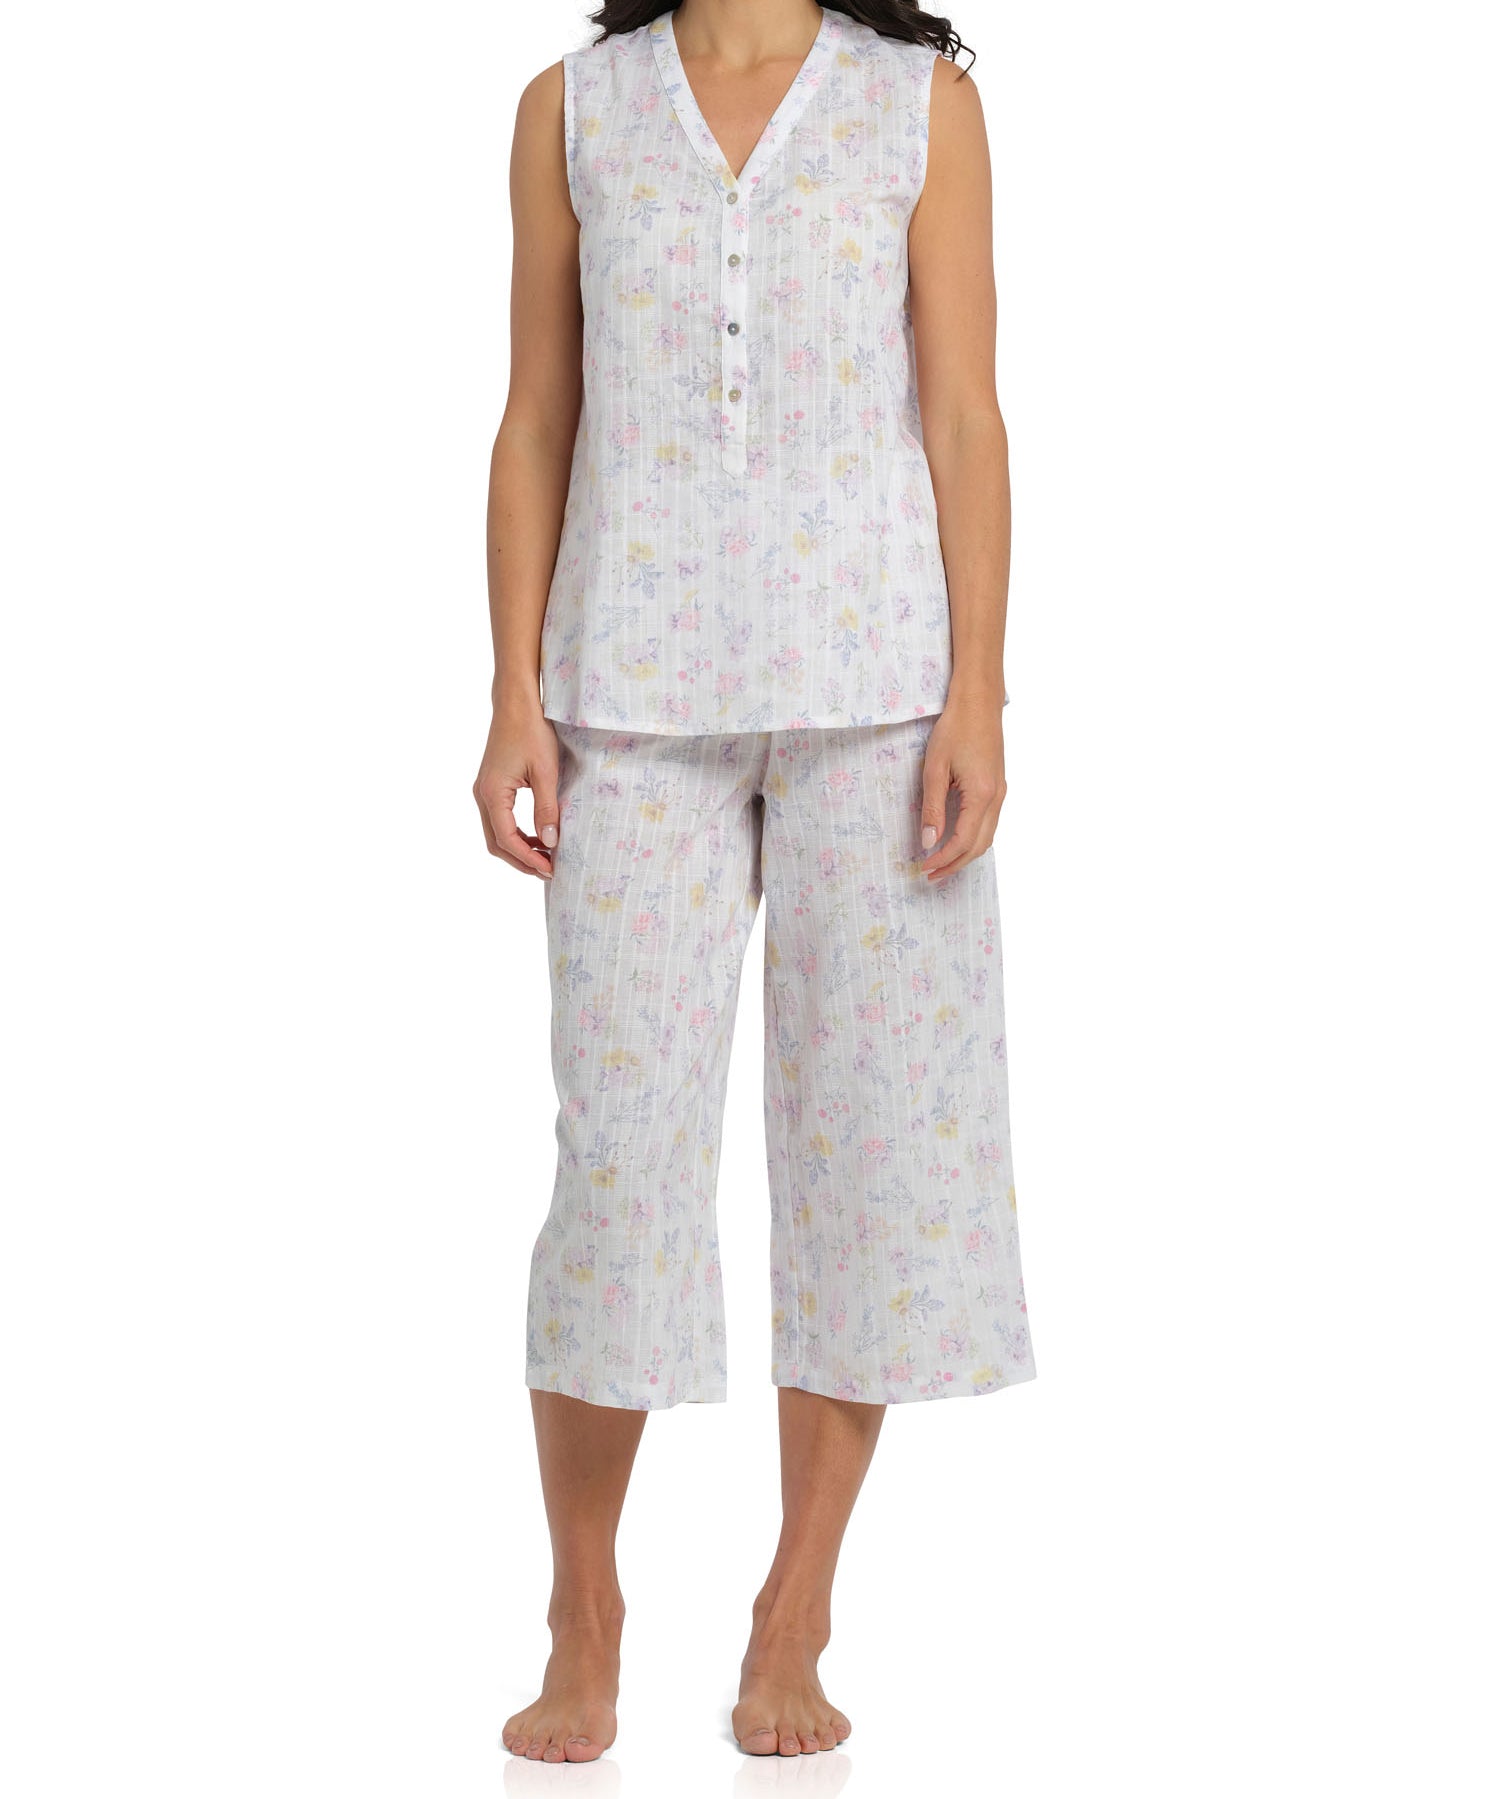 Women's Spring Meadow Cotton Tank & 3/4 Pant Pyjama Set | Magnolia Lounge Australia